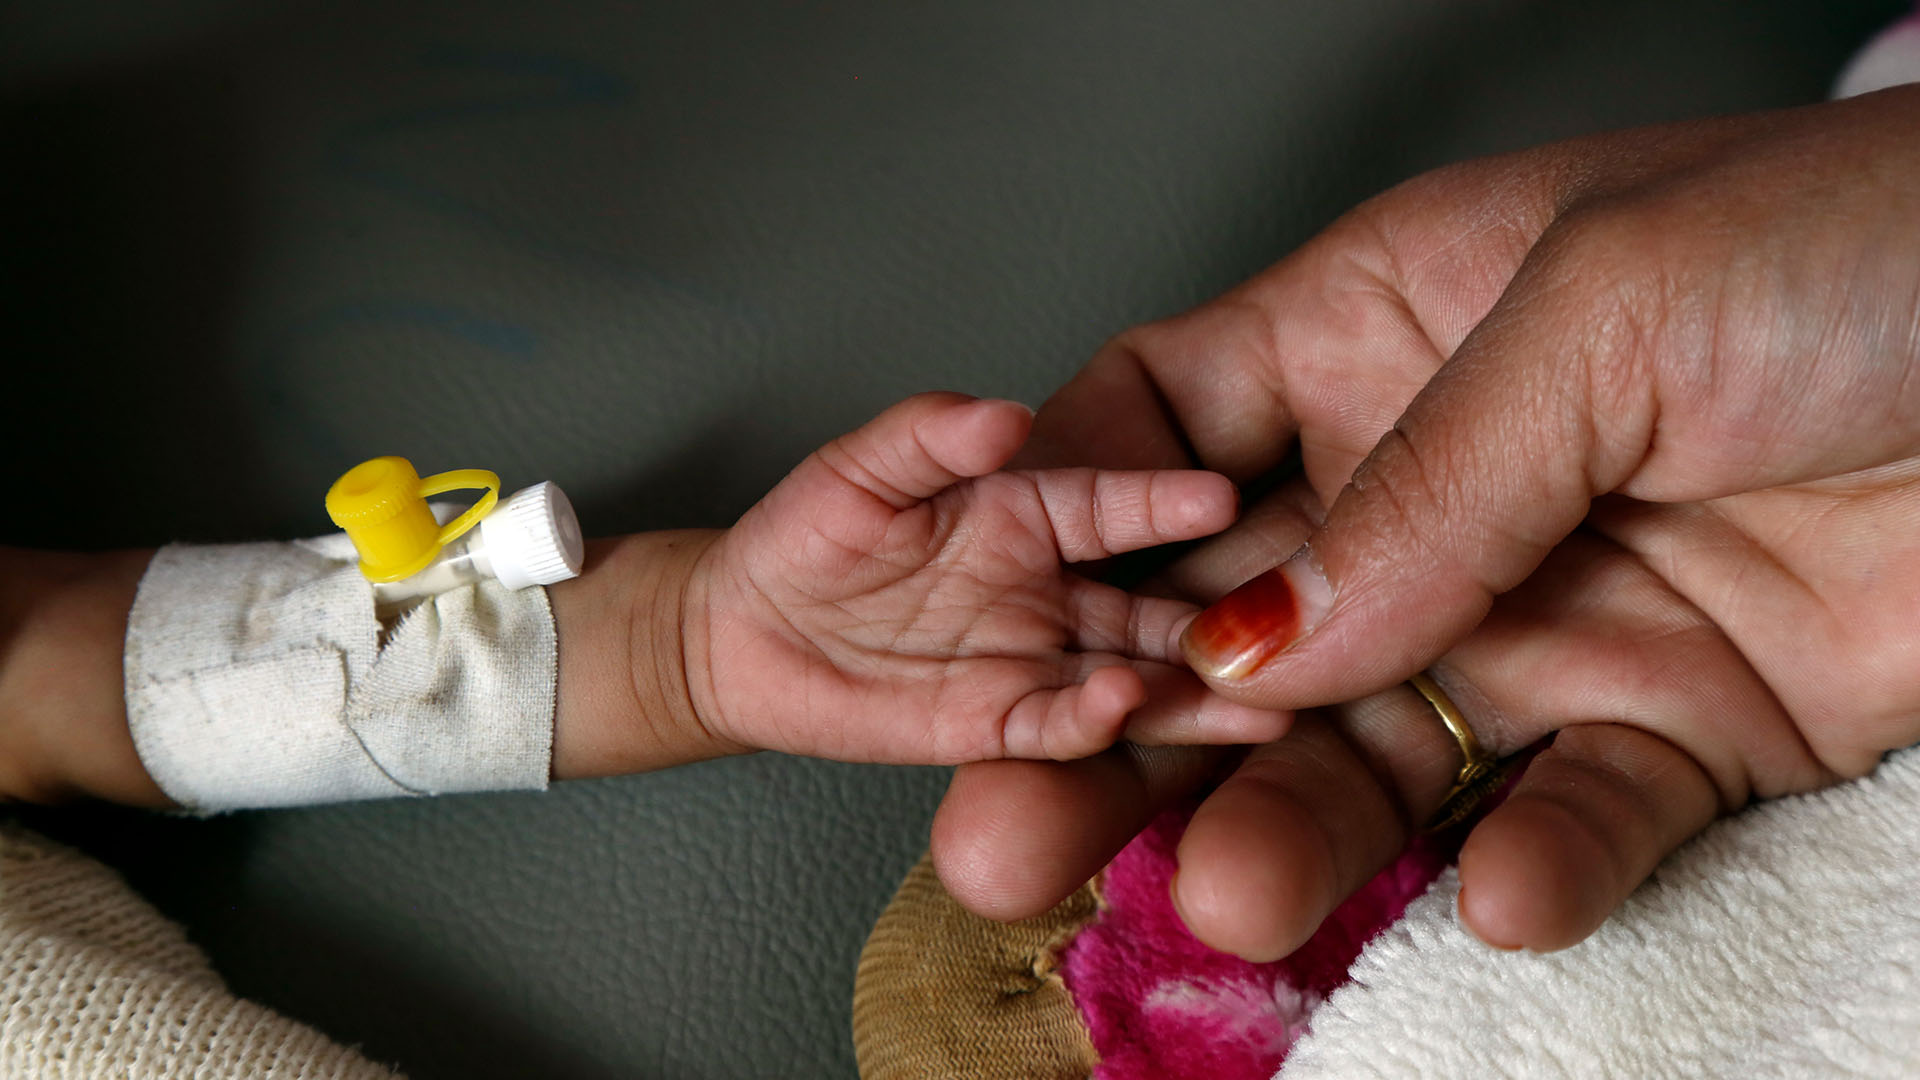 Die Hand einer Frau hält die Hand eines unterernährten Kindes.